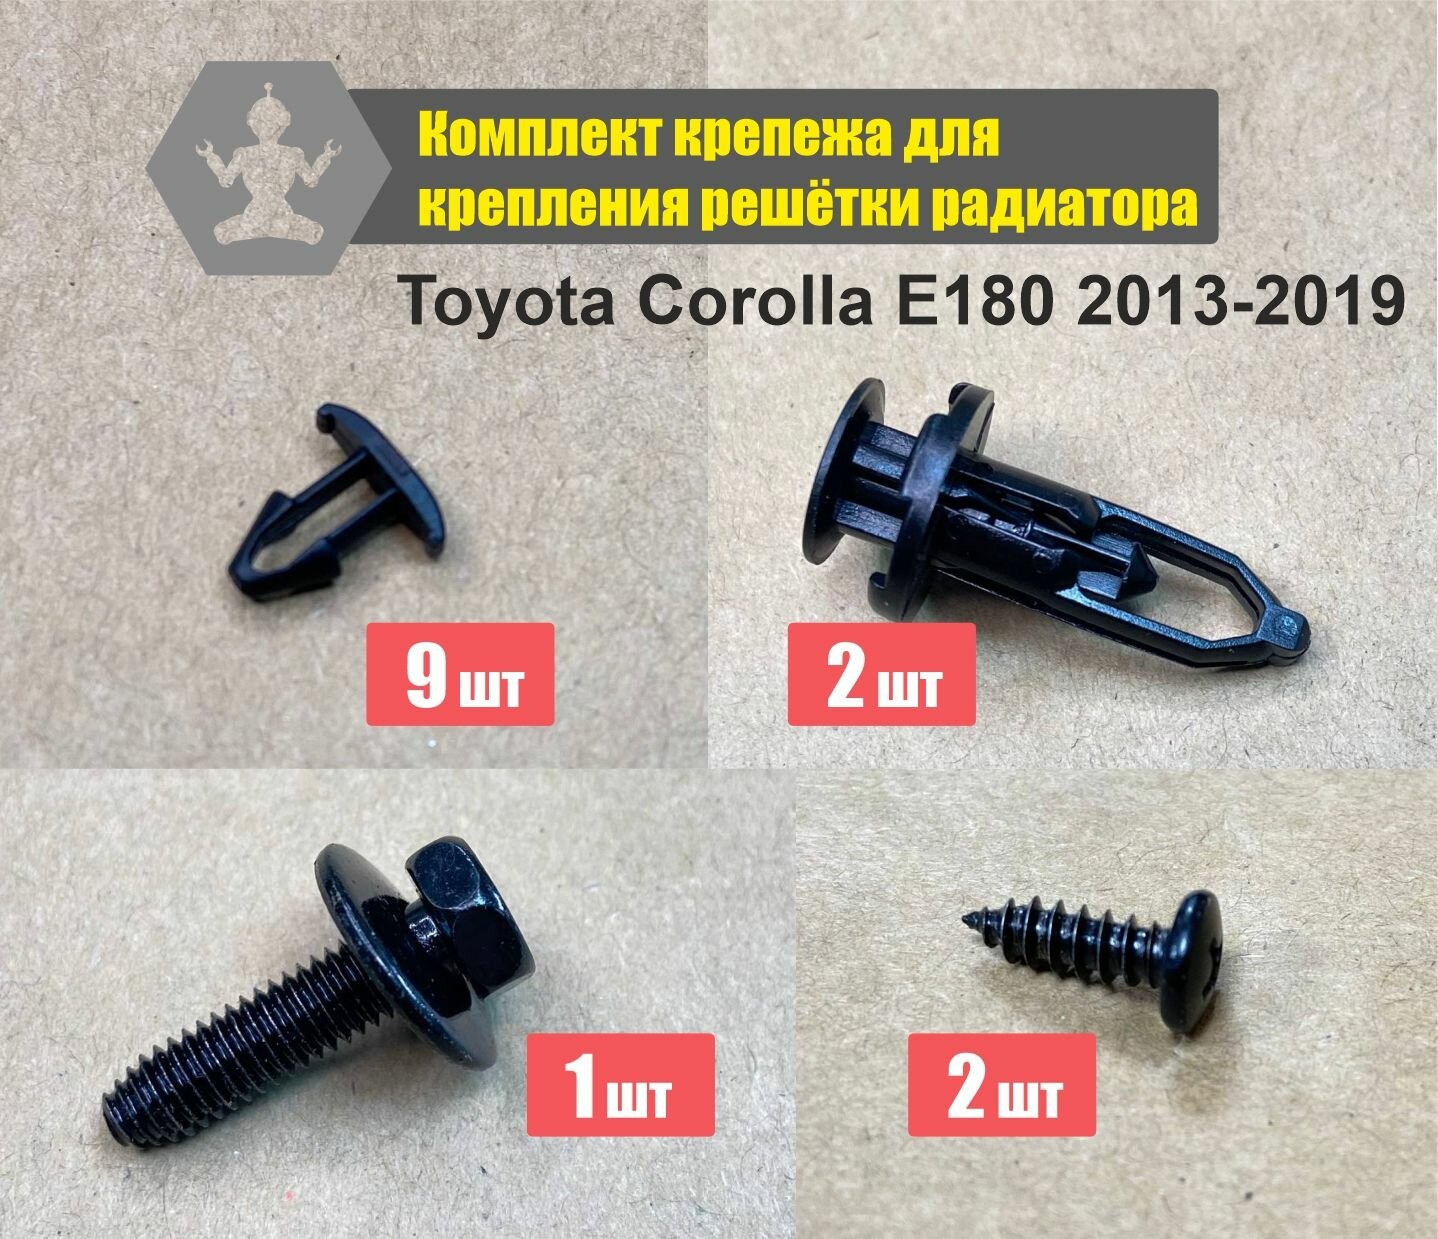 Комплект для крепления решётки радиатора Toyota Corolla E180 2013-2019